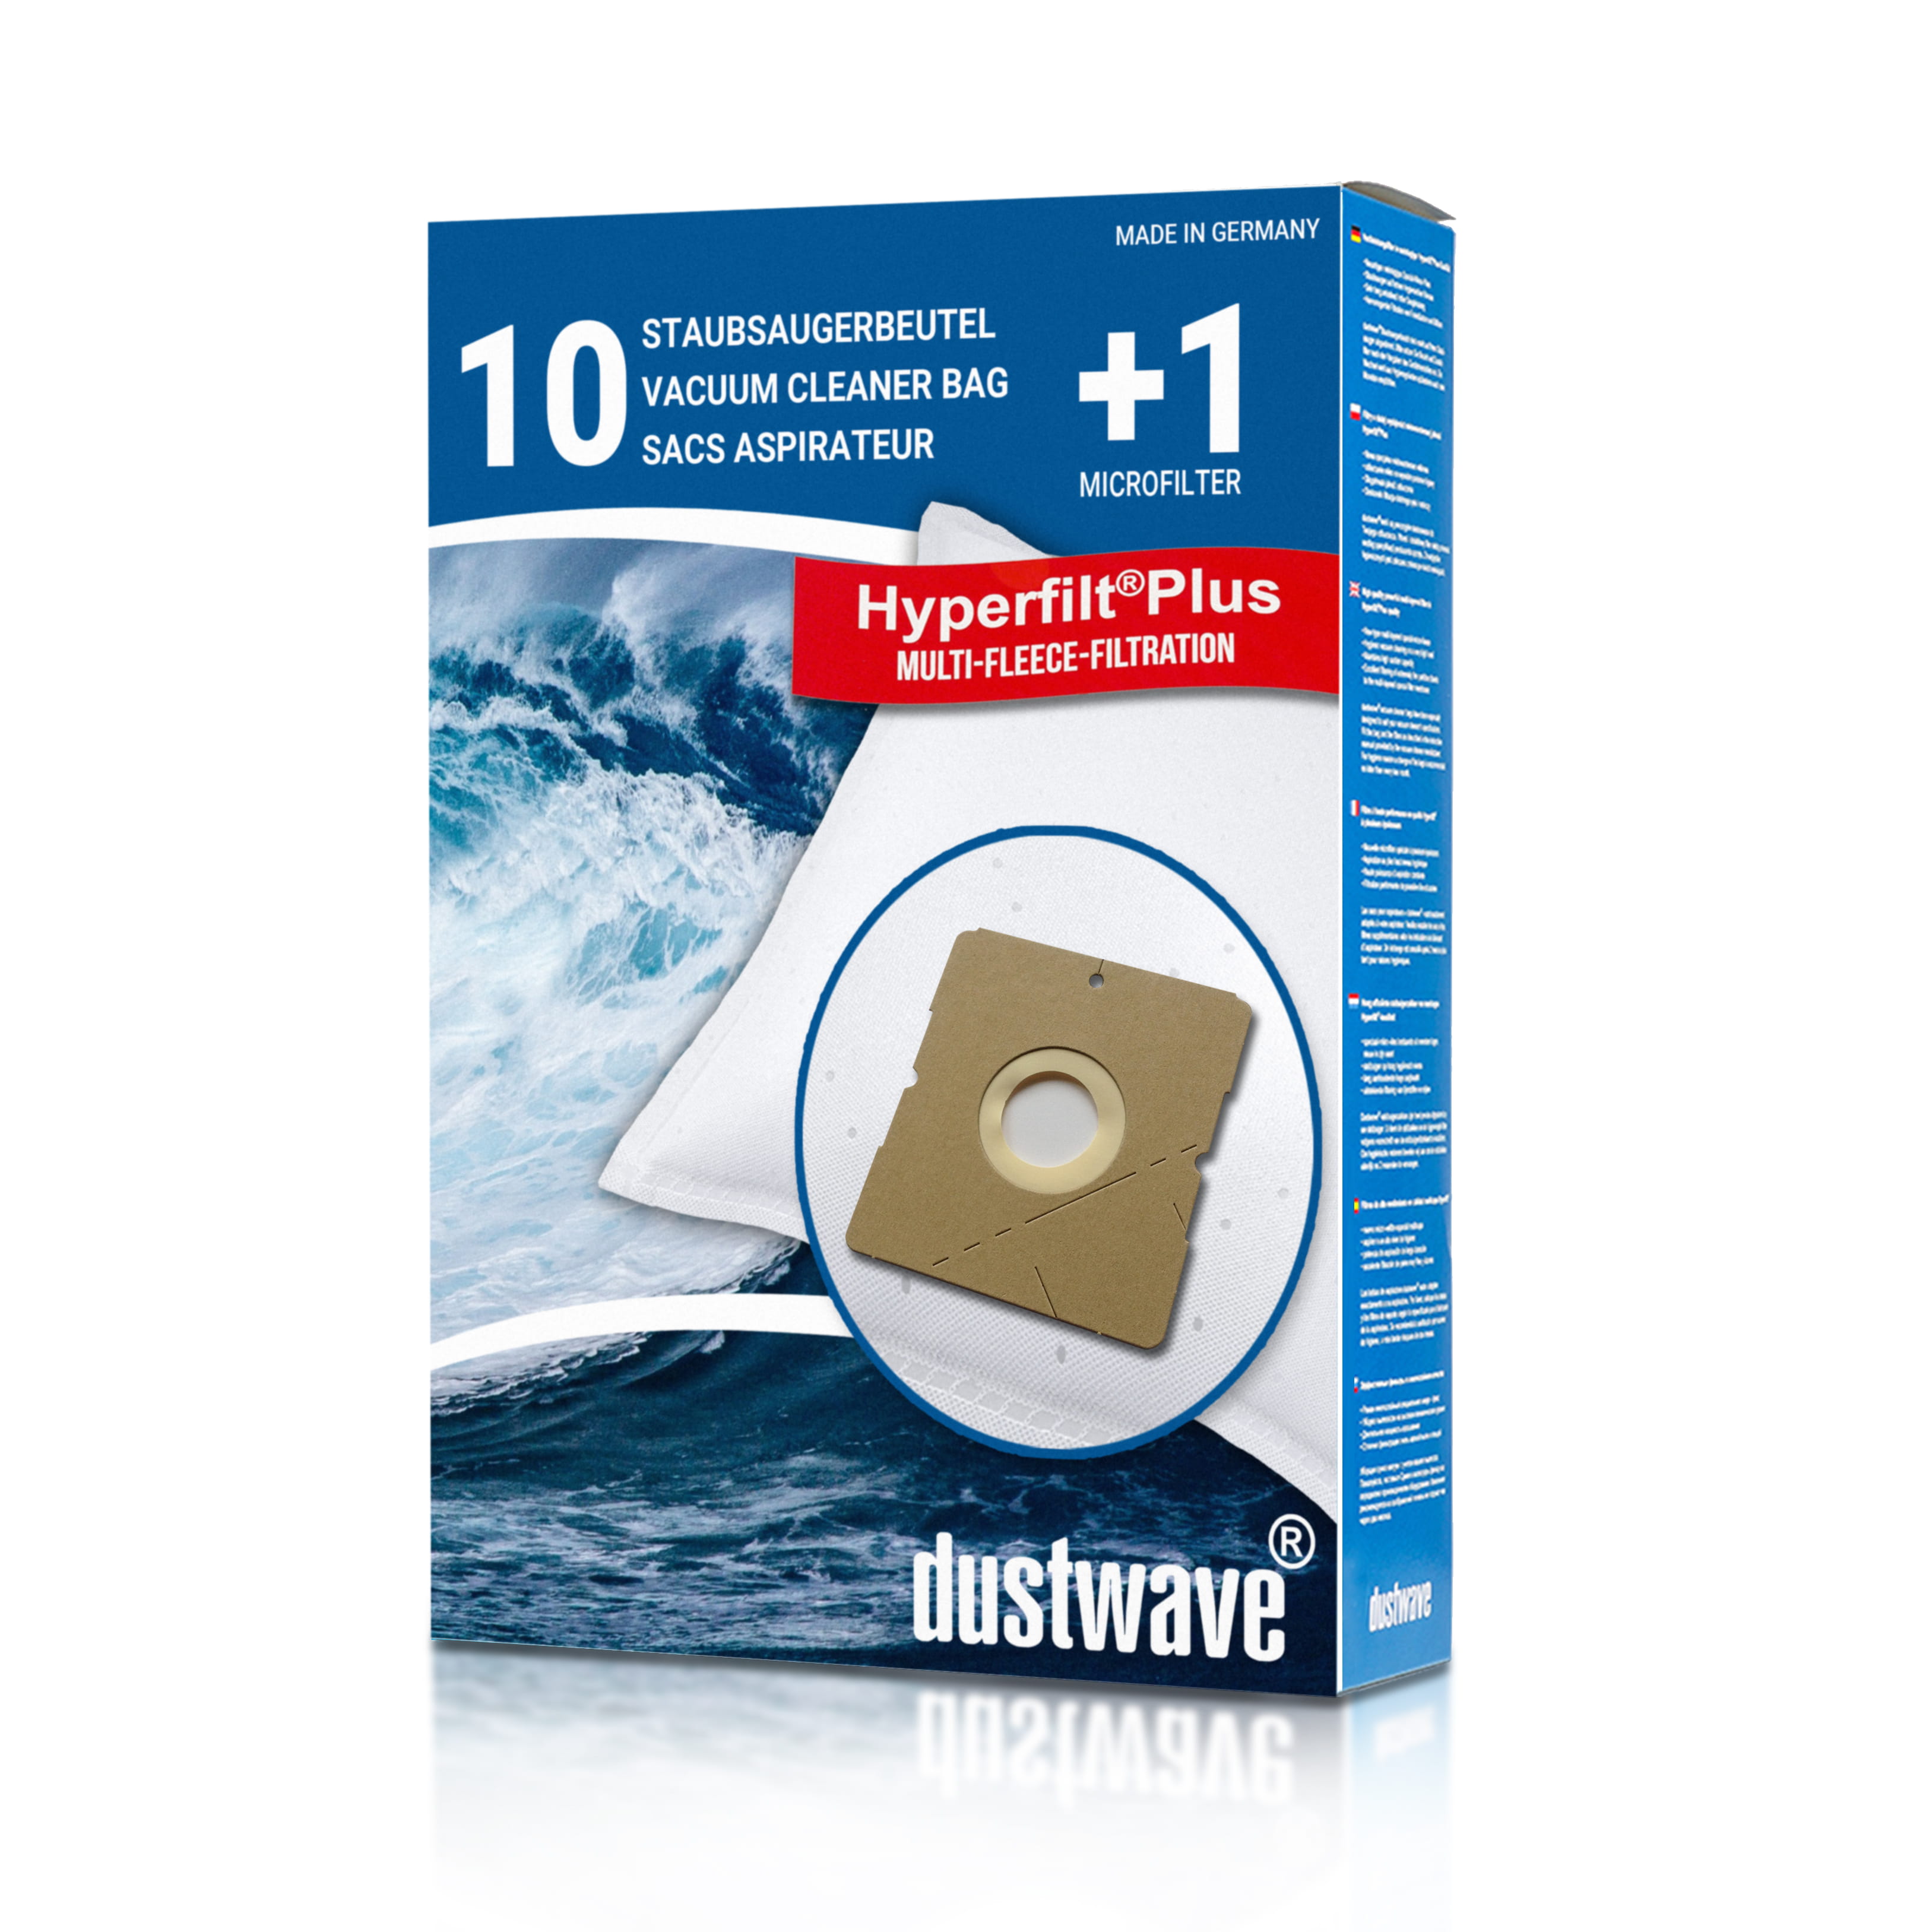 Dustwave® 10 Staubsaugerbeutel für Hoover TDC2001 001 - hocheffizient, mehrlagiges Mikrovlies mit Hygieneverschluss - Made in Germany